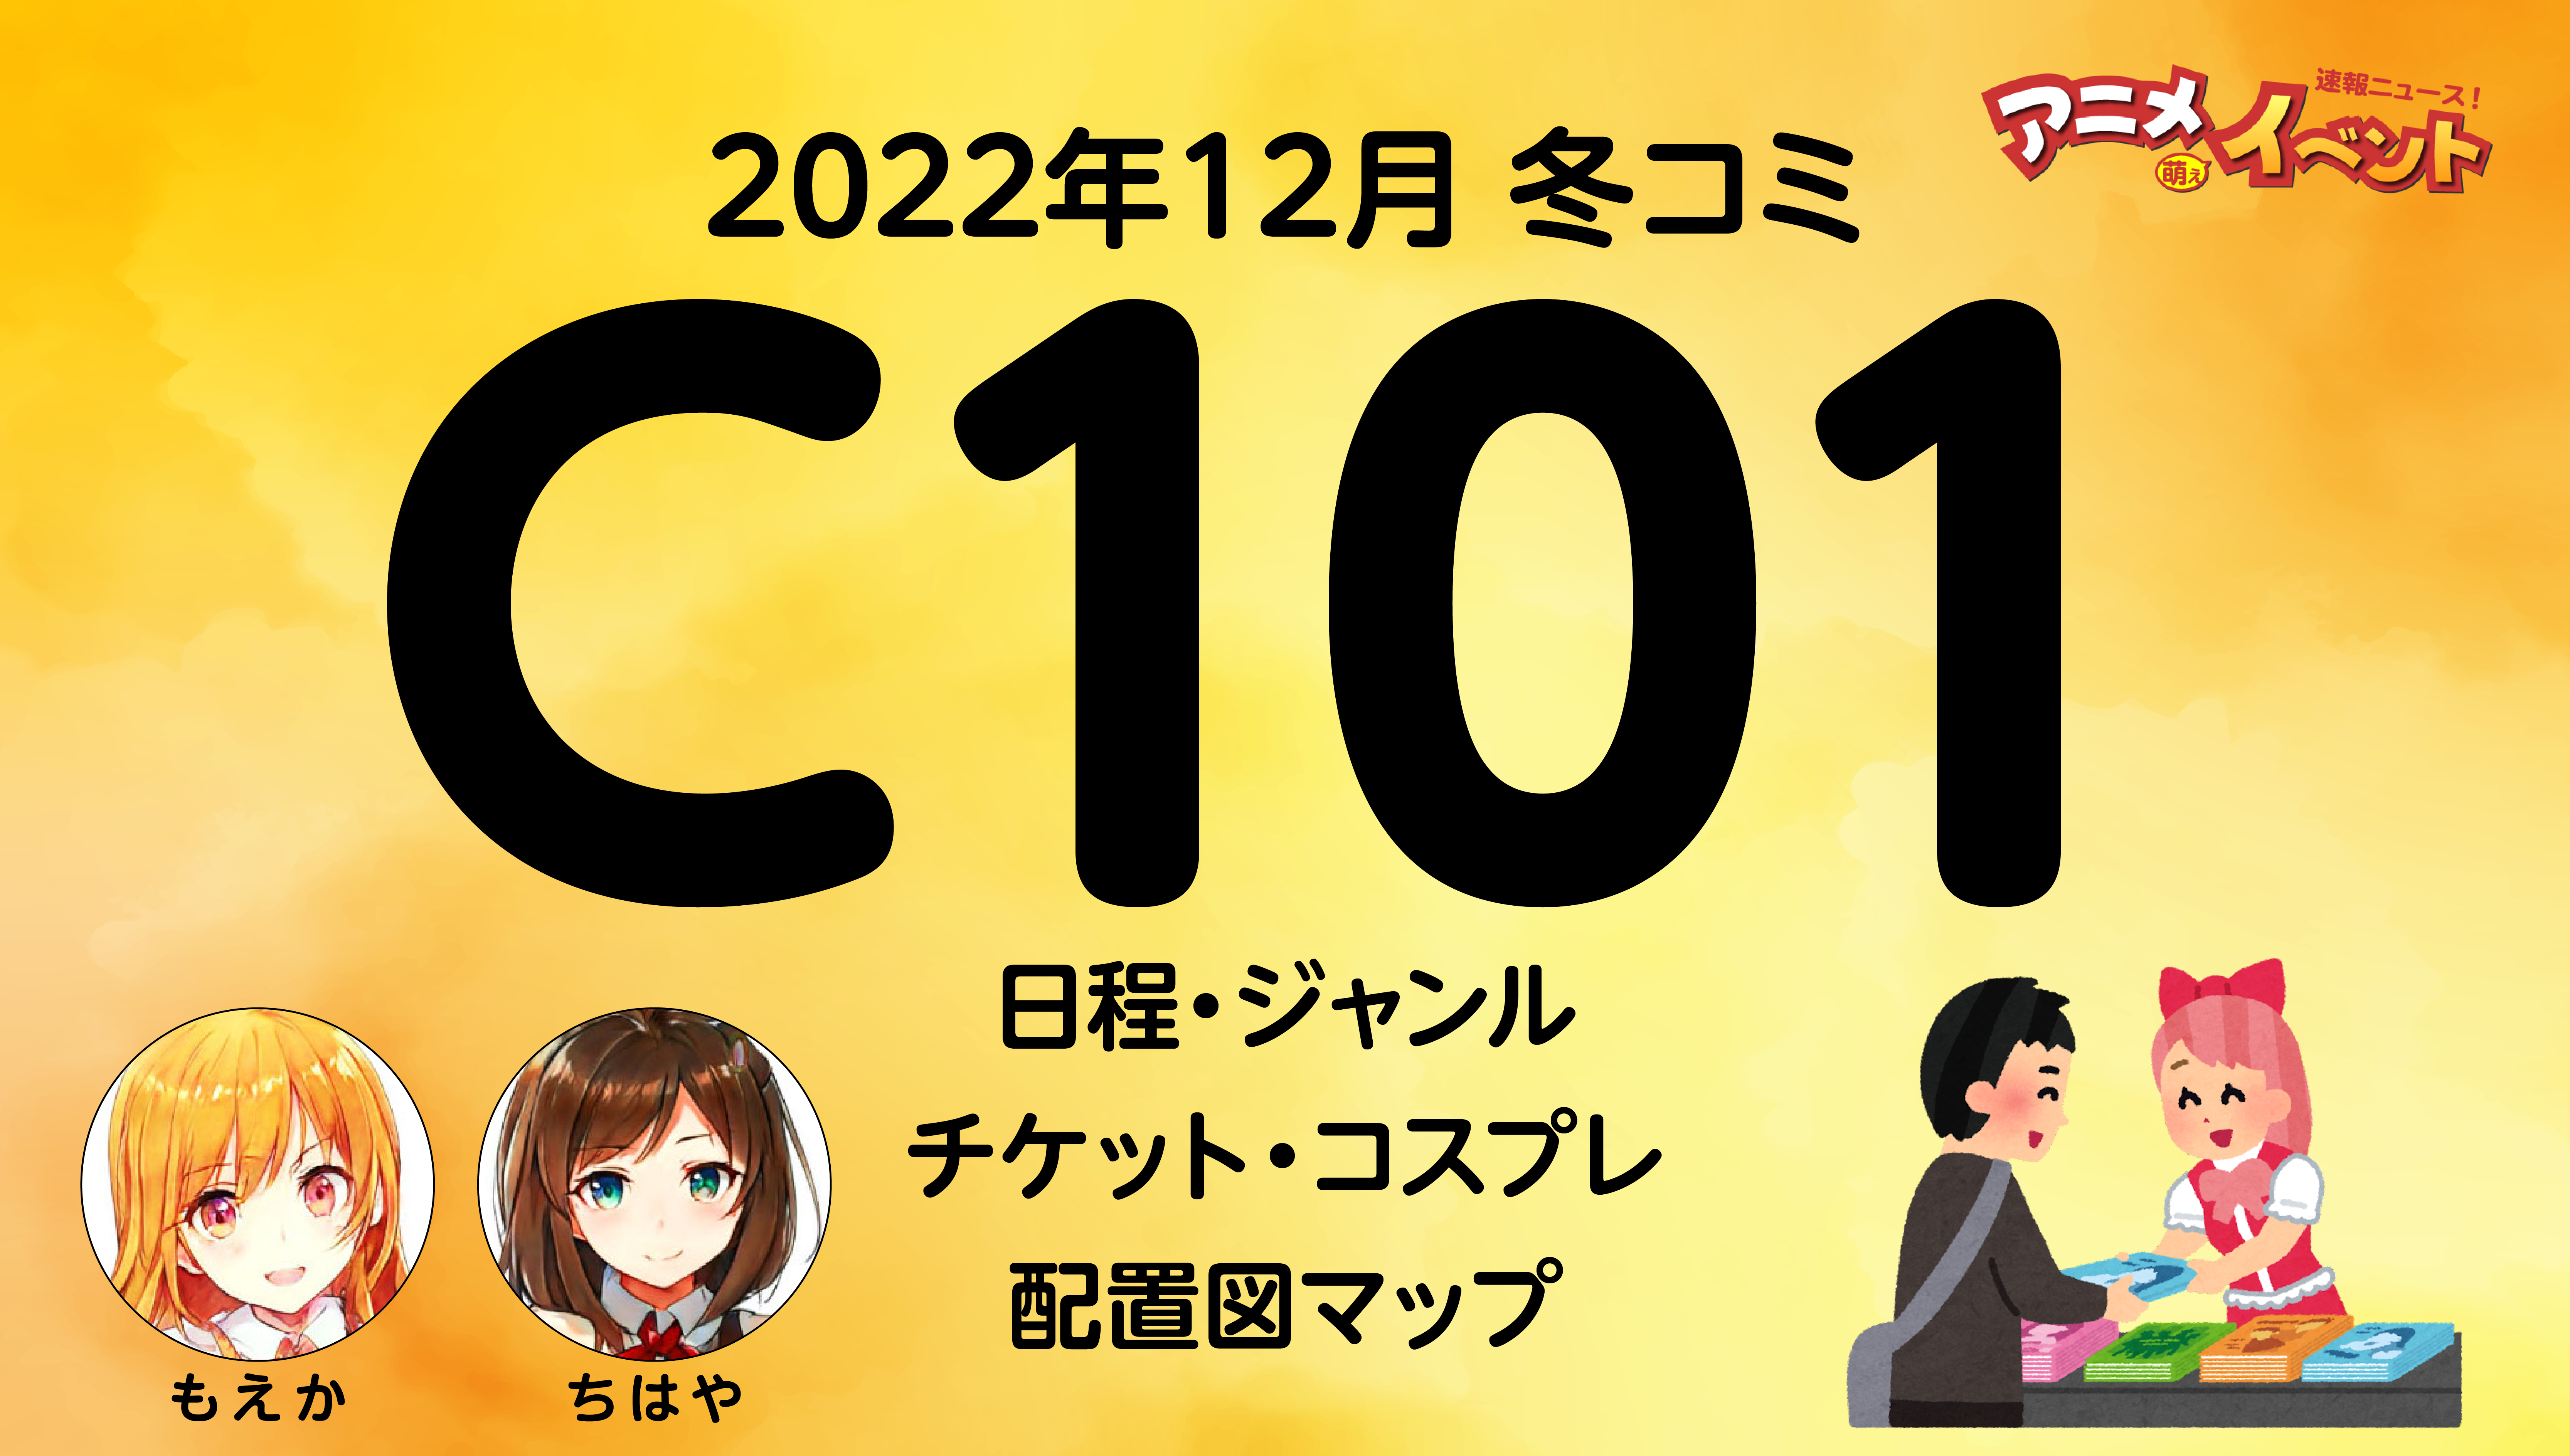 C101 2日目 コミケ サークルチケット 12月31日 コミックマーケット 土